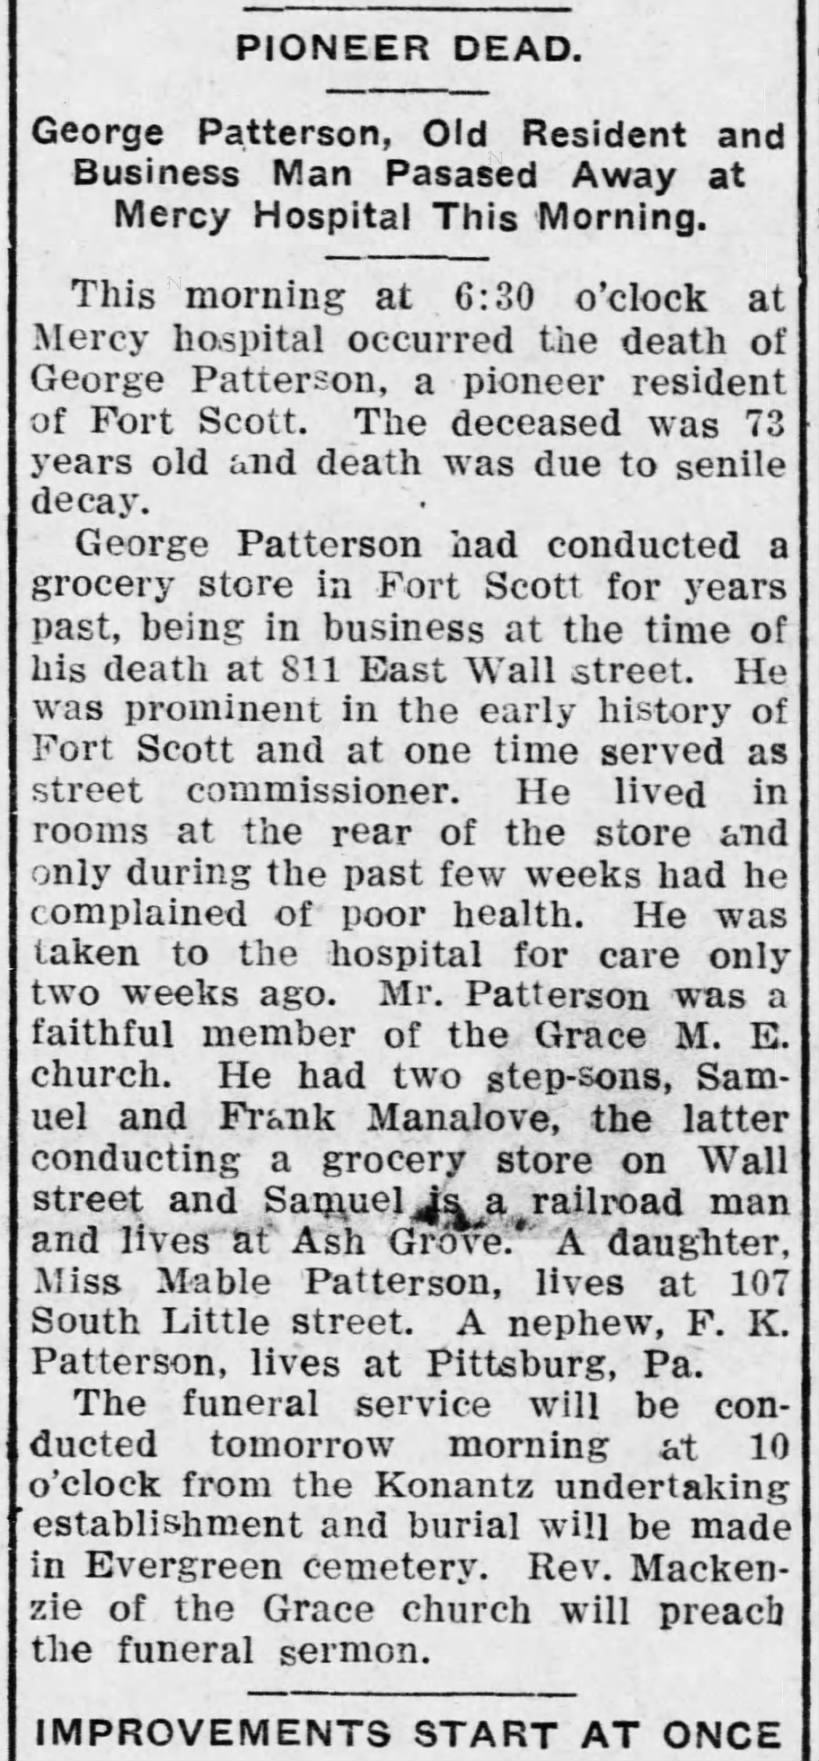 Fort Scott Tribune & Daily Monitor, Fort Scott KS, Sat. 24 Sep 1910, p1